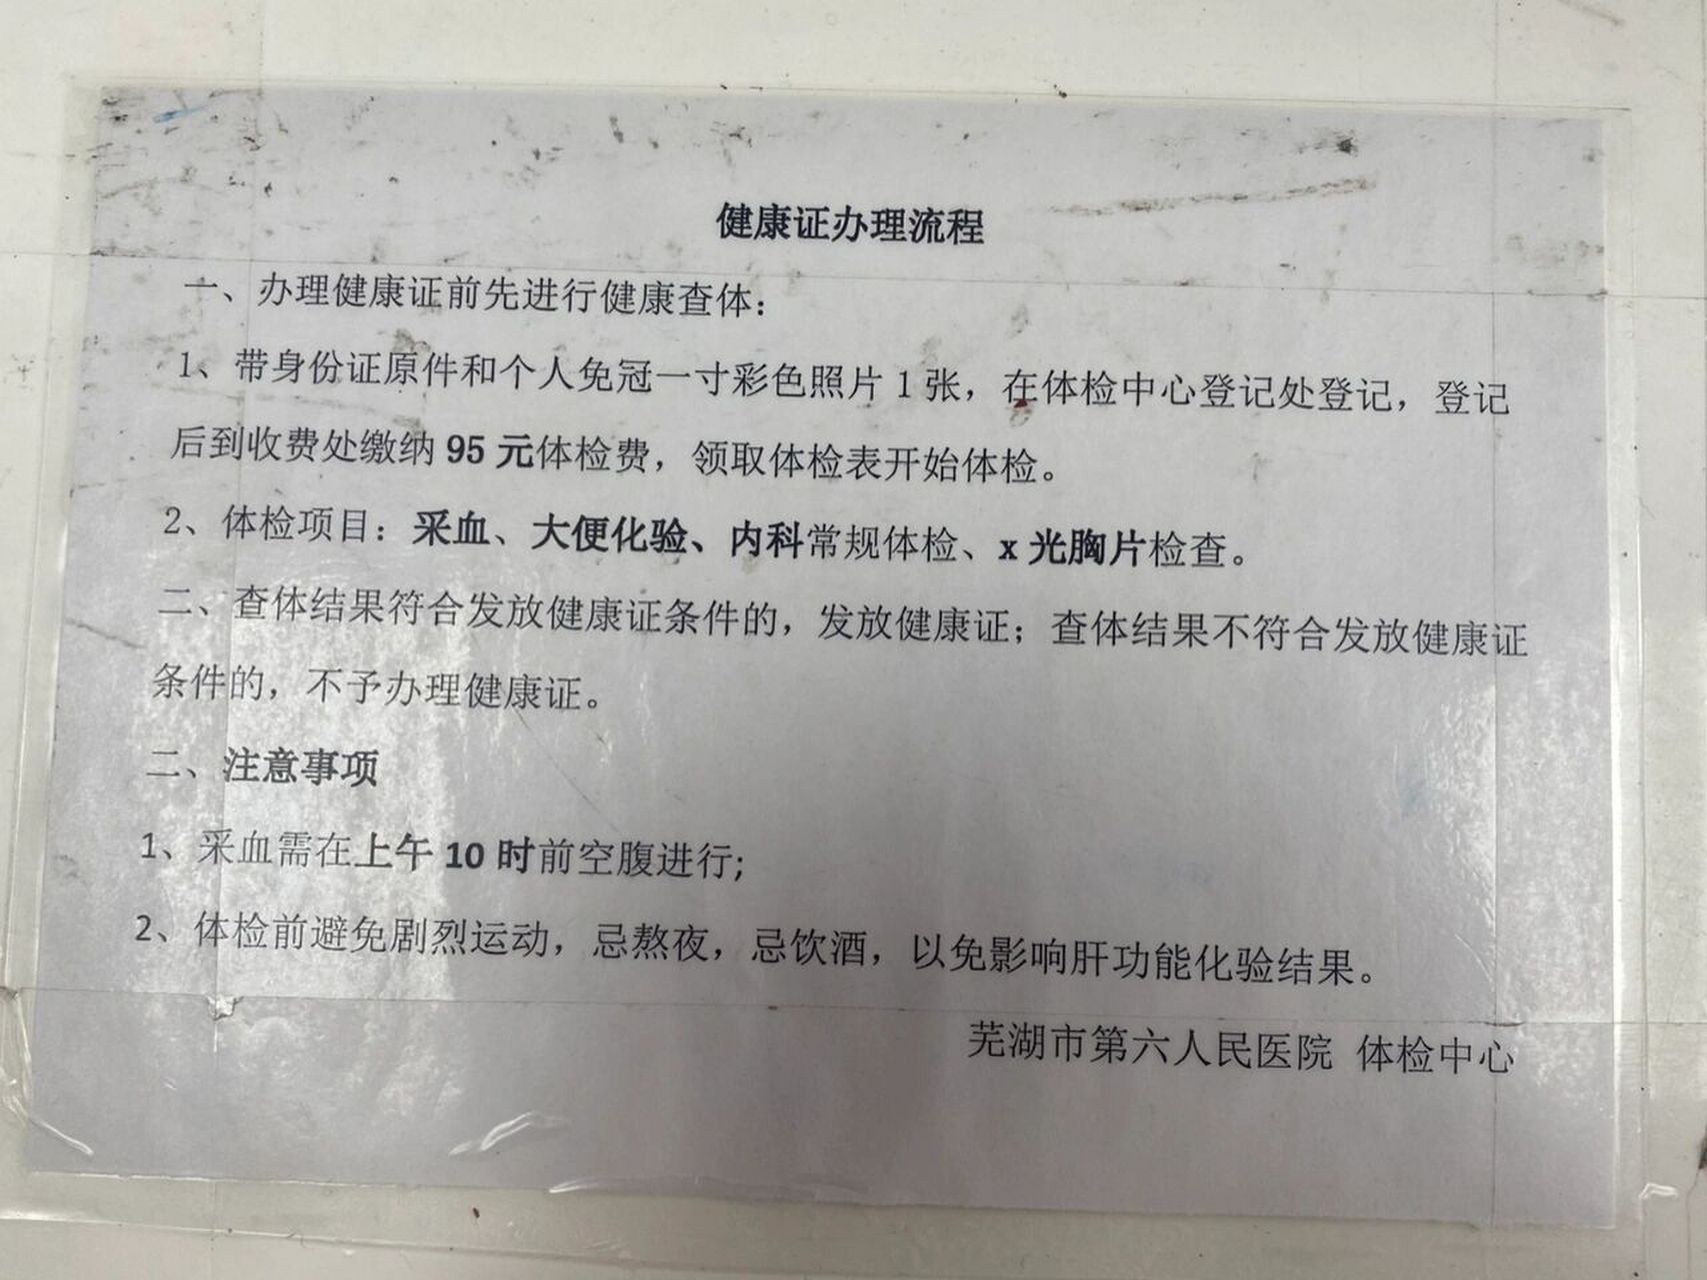 重庆健康证图片背面图片